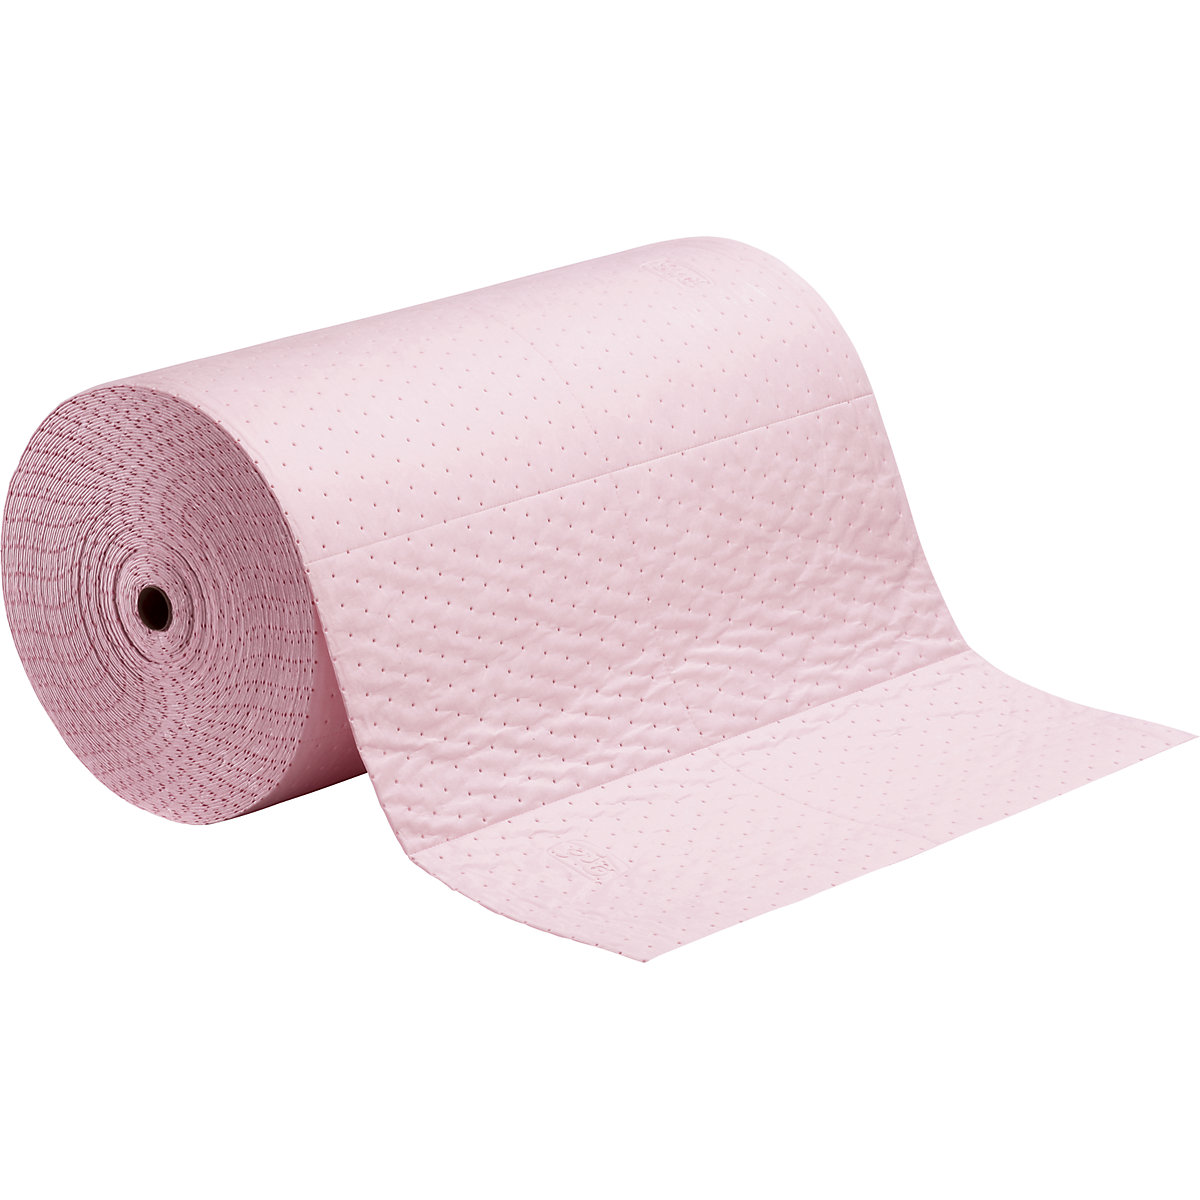 PIG – Role absorpční textilie HazMat pro chemikálie, provedení heavy weight, délka 46 m, perforace v délce po 760 mm